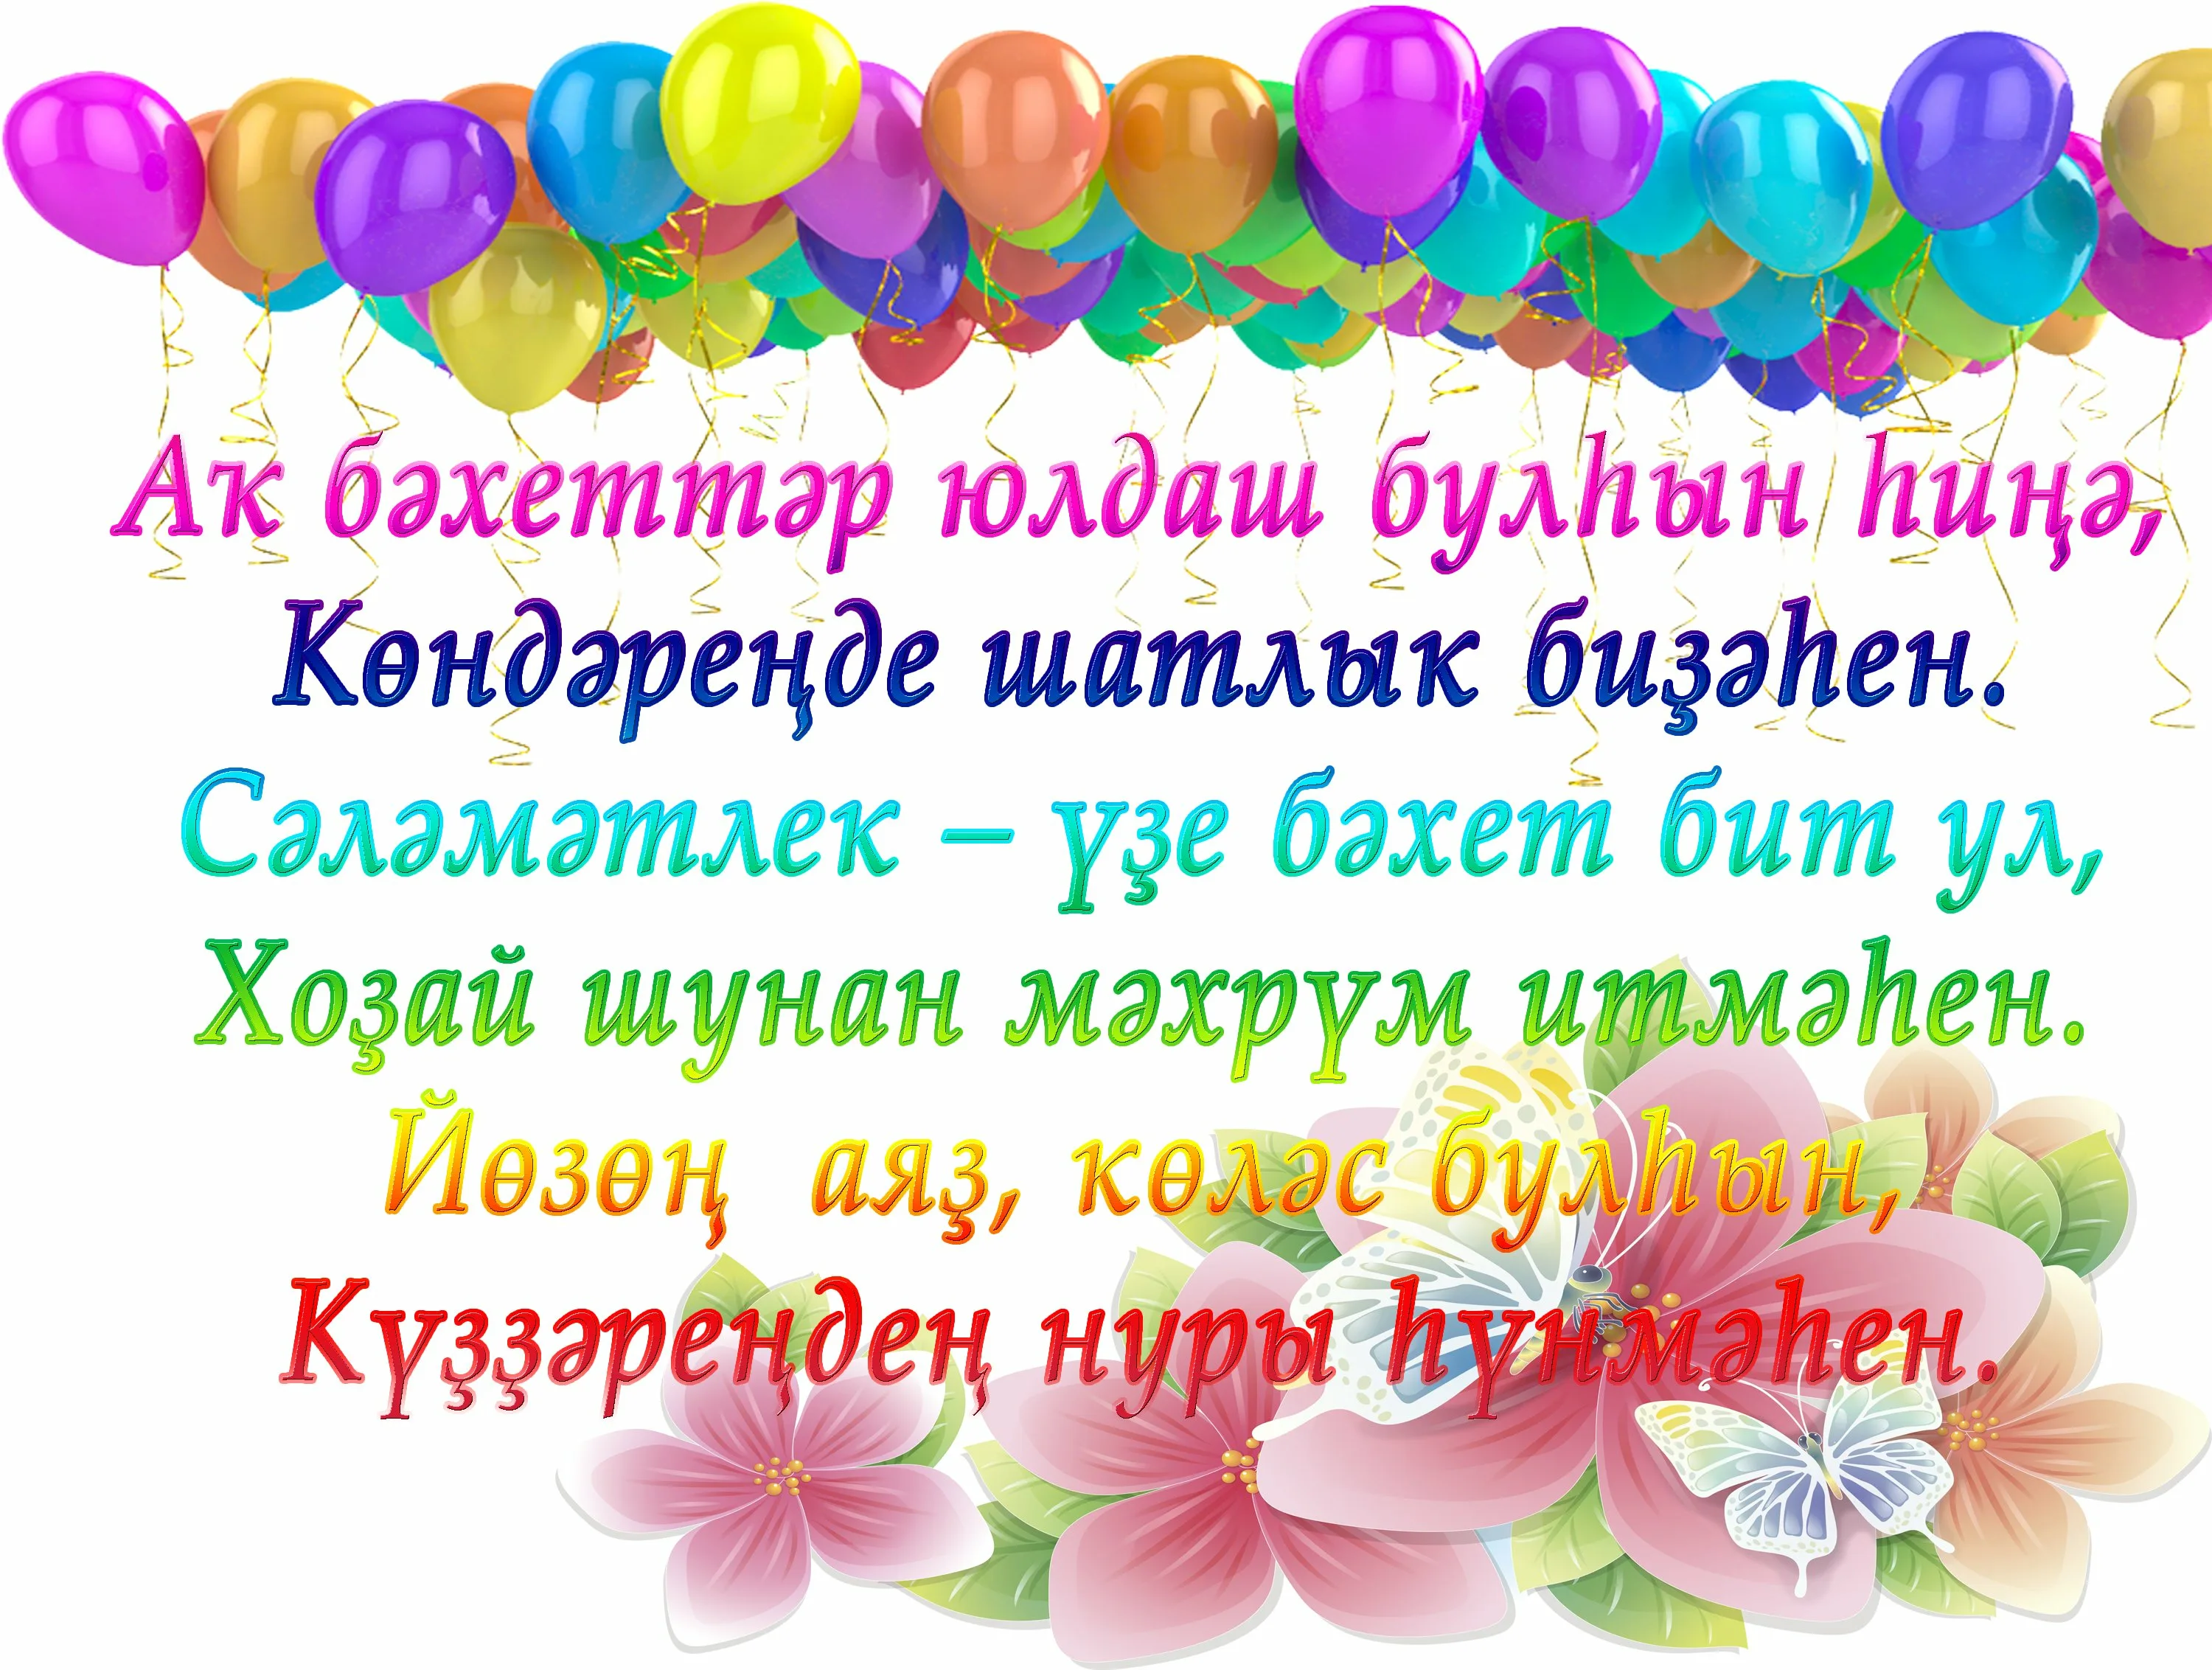 Башкирские пожелания на день рождения. Поздравления с днём рождения на башкирском. Поздравления с днём рождения на башкирском языке. Поздравления с днём на башкирском языке. Поздравление с юбилеем на башкирском языке.